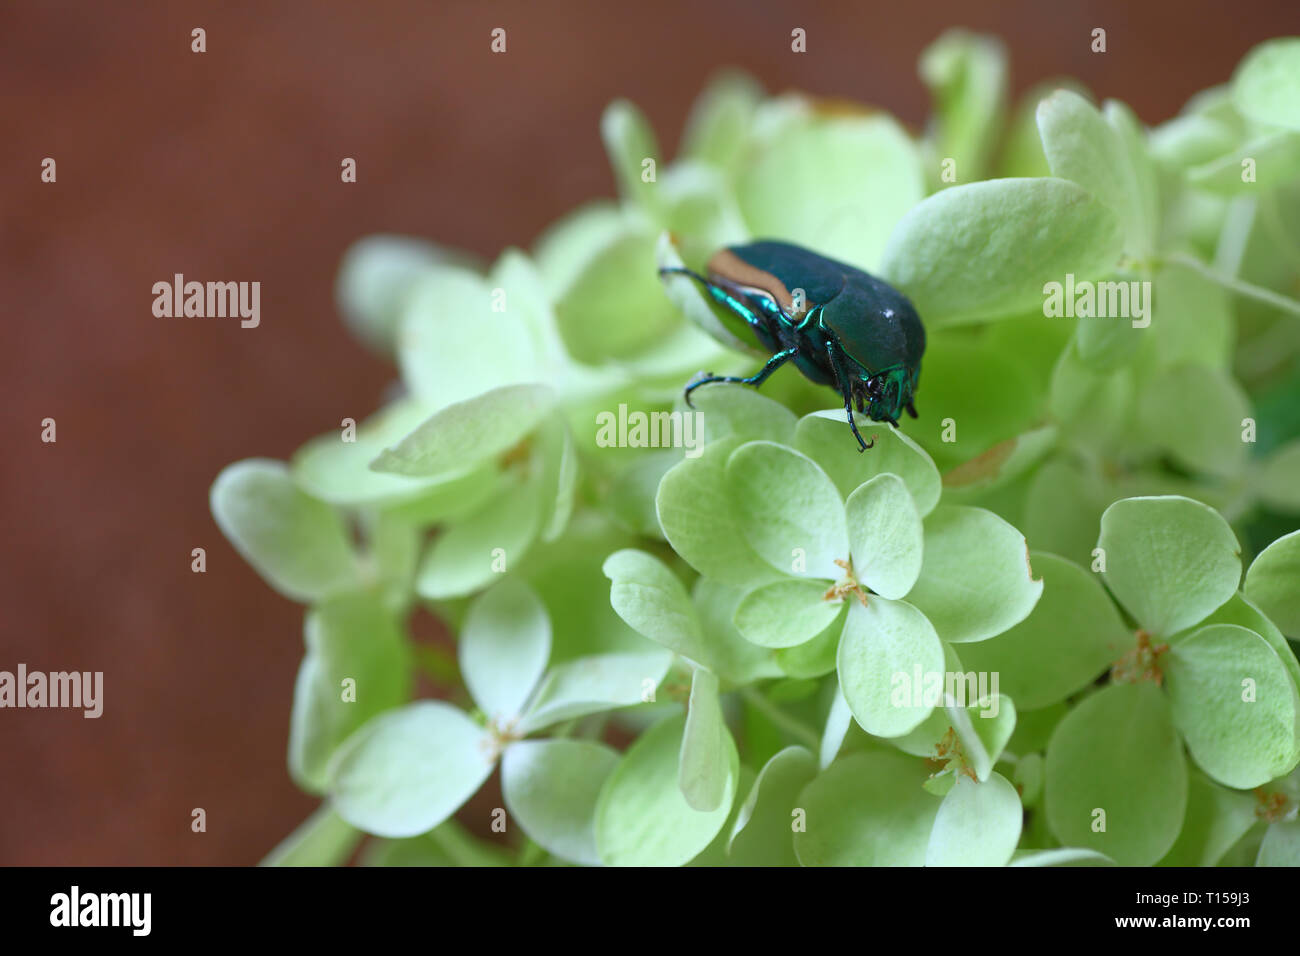 Un insecte de couleur sombre sur fleurs vert pâle Banque D'Images